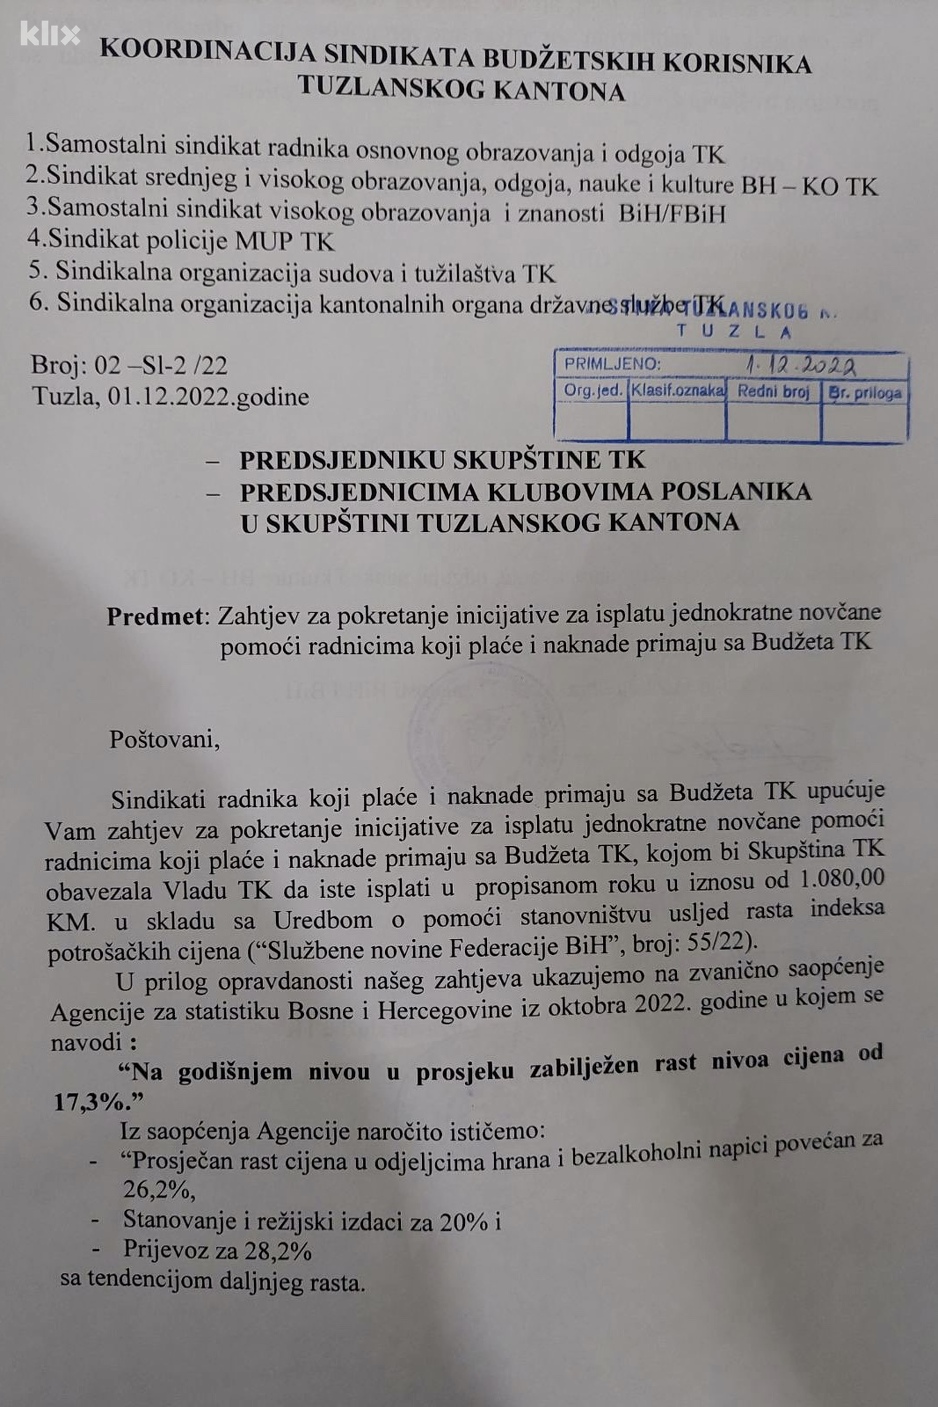 Deset hiljada budžetskih korisnika iz Tuzlanskog kantona traže isplatu po 1.080 KM pomoći